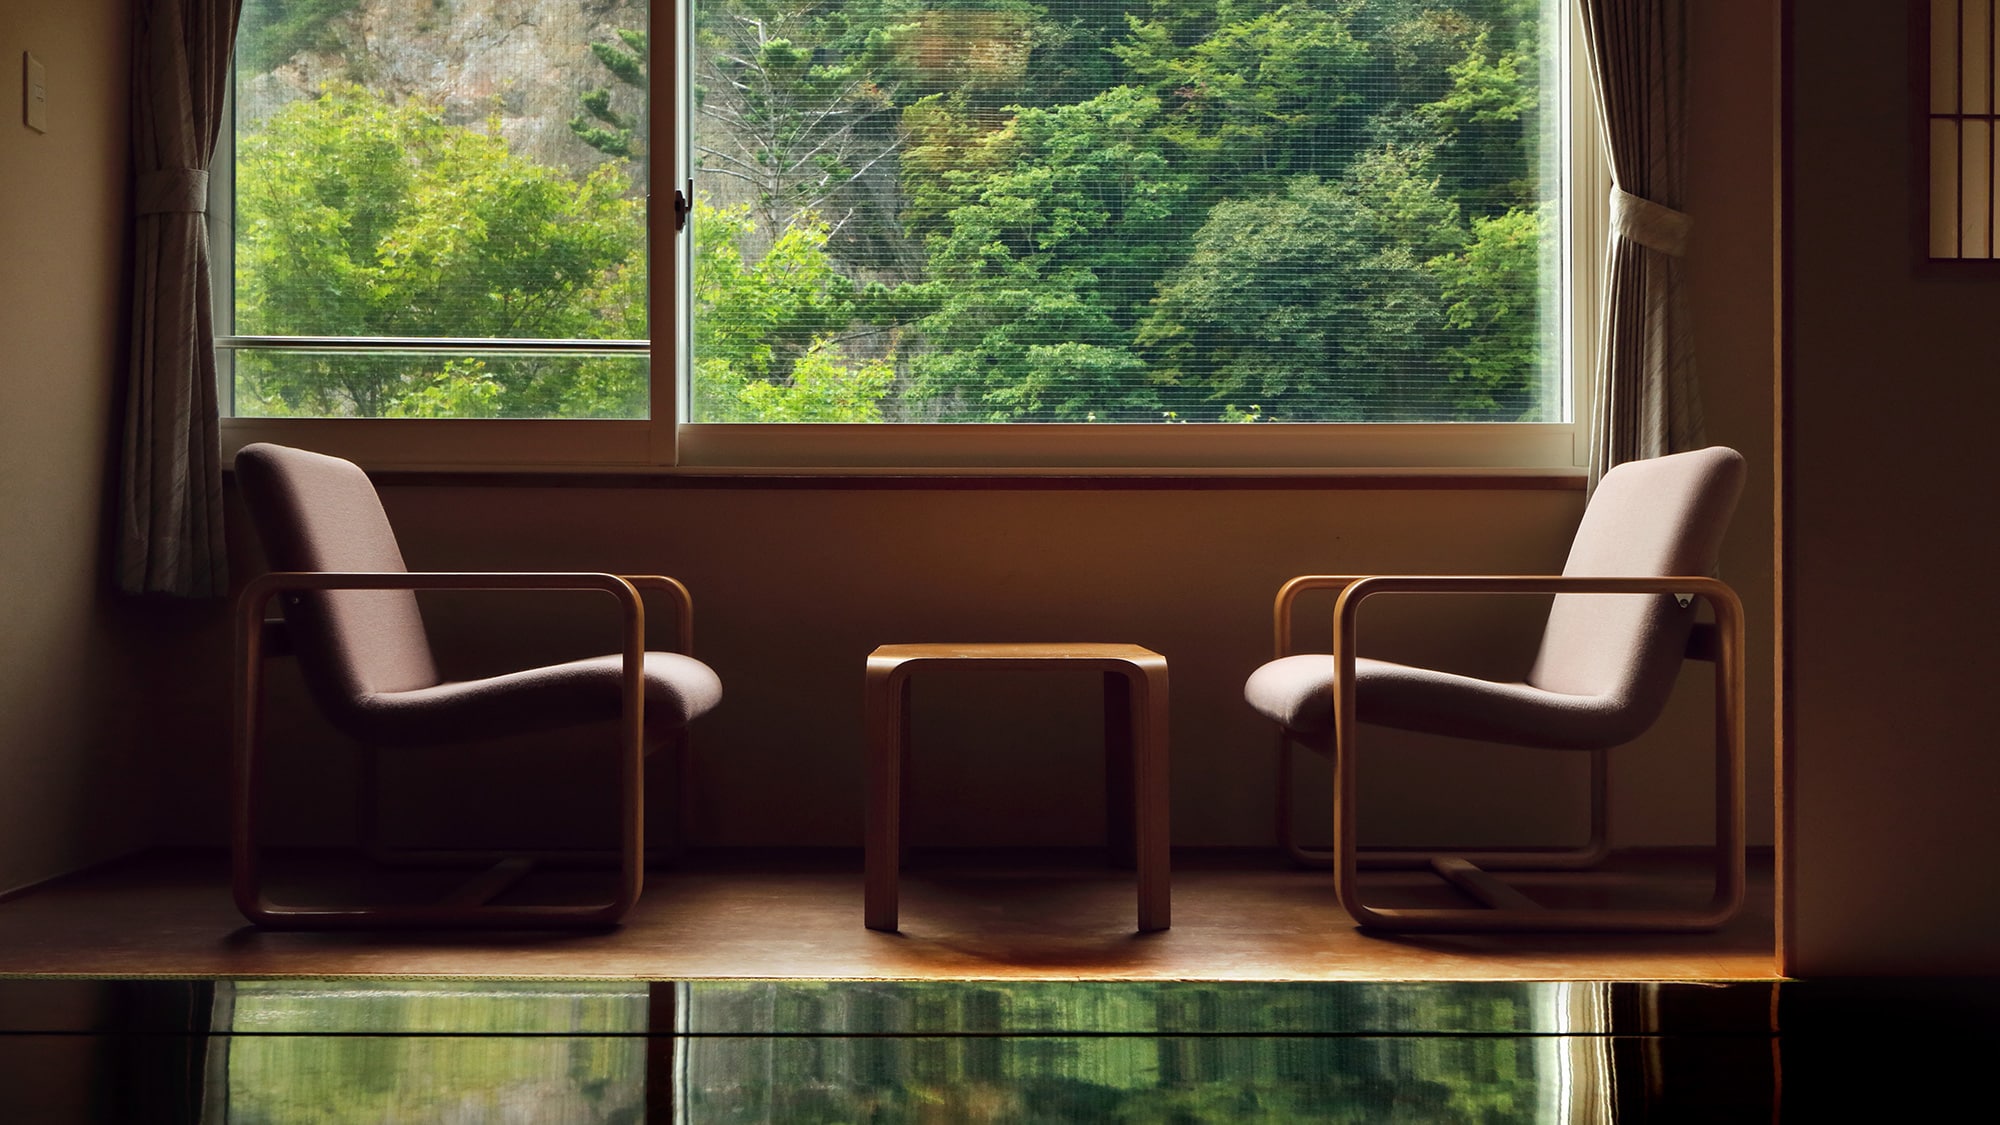 【일본식 방】 창 너머는 소운쿄 같은 웅대한 자연이 펼쳐집니다